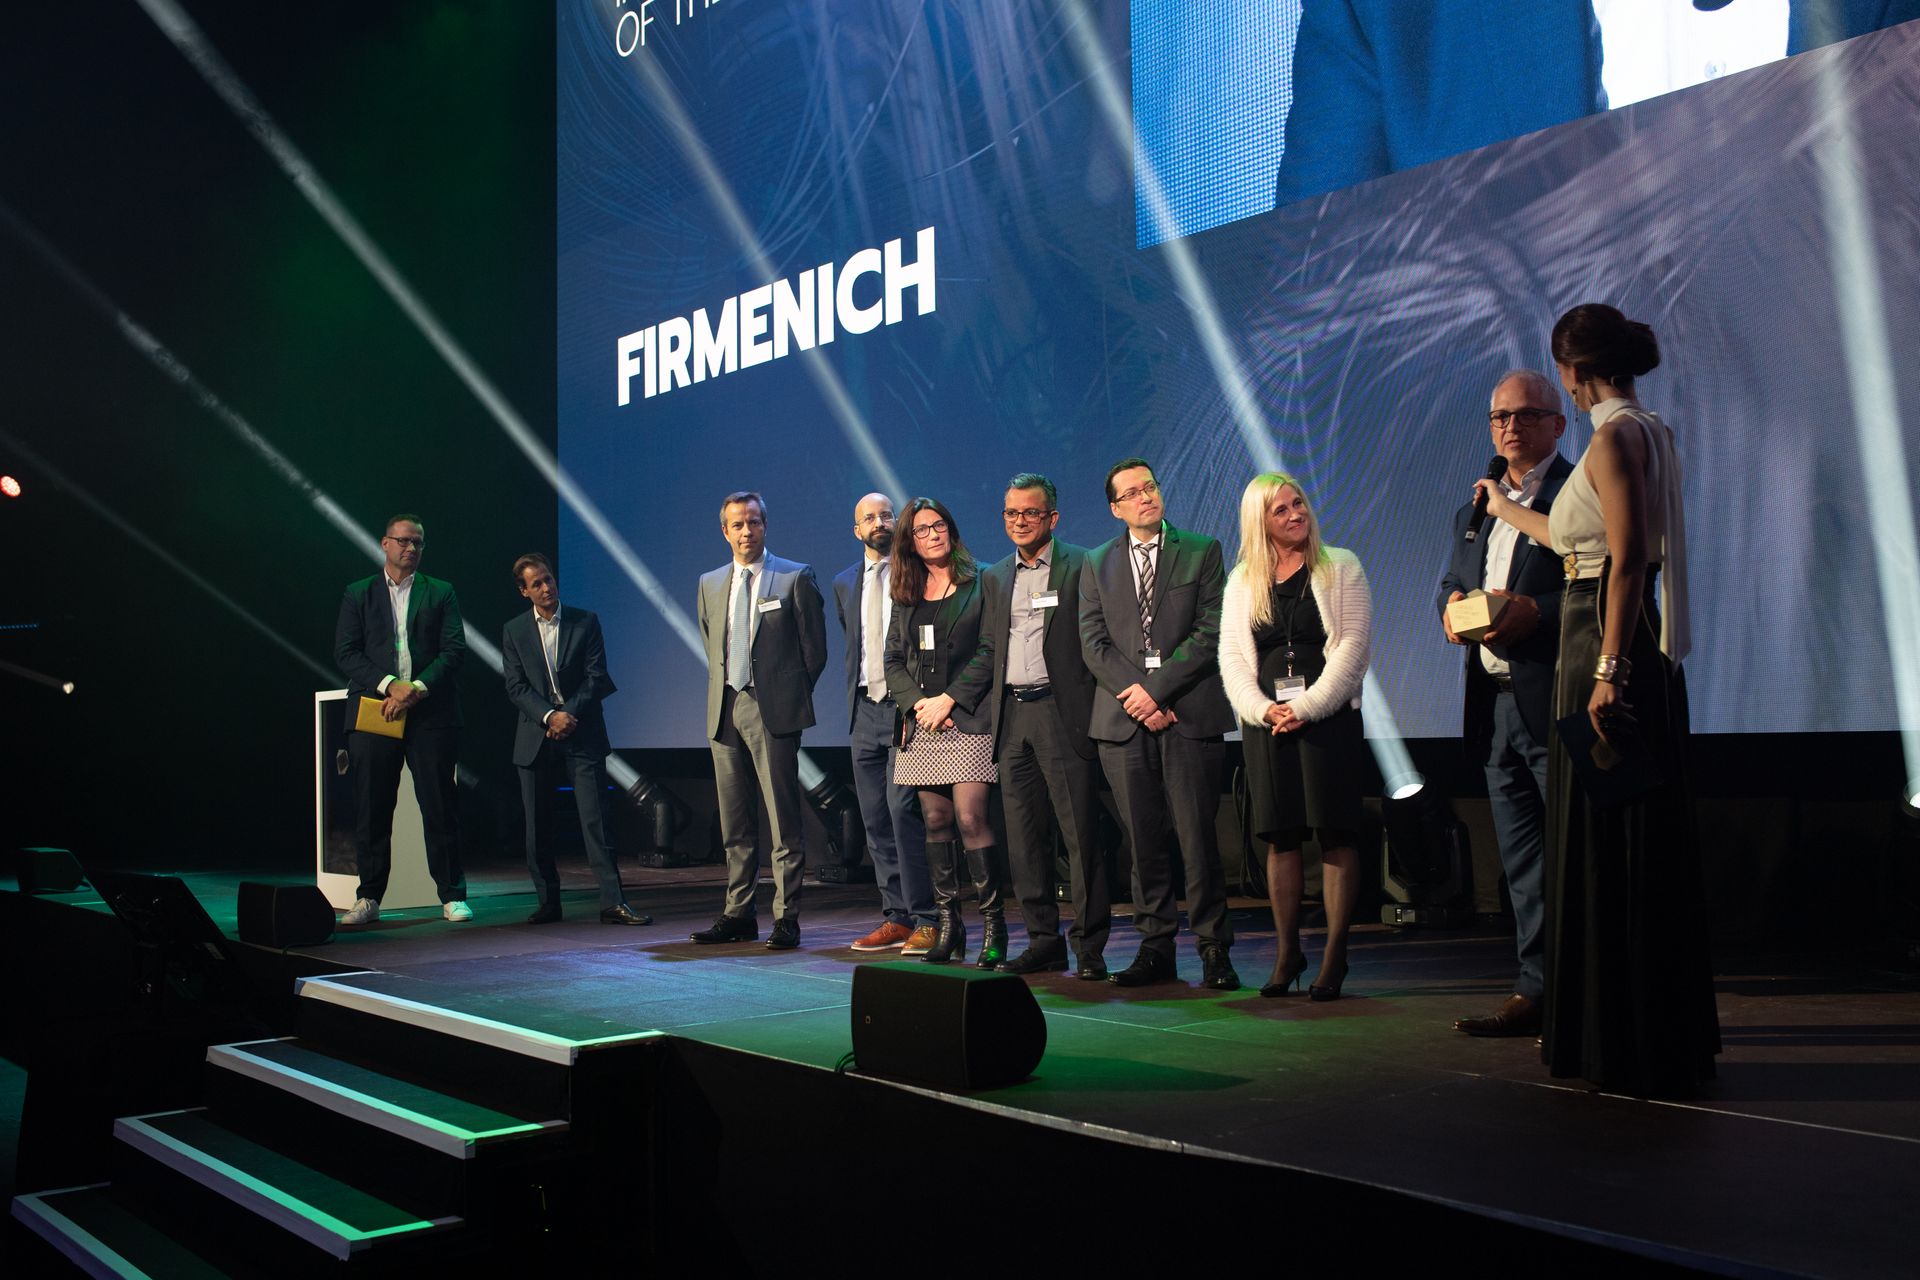 חברת "פירמניך" זכתה בפרס "החדשנות הדיגיטלית של השנה" בפרס "הכלכלה הדיגיטלית" של שוויץ